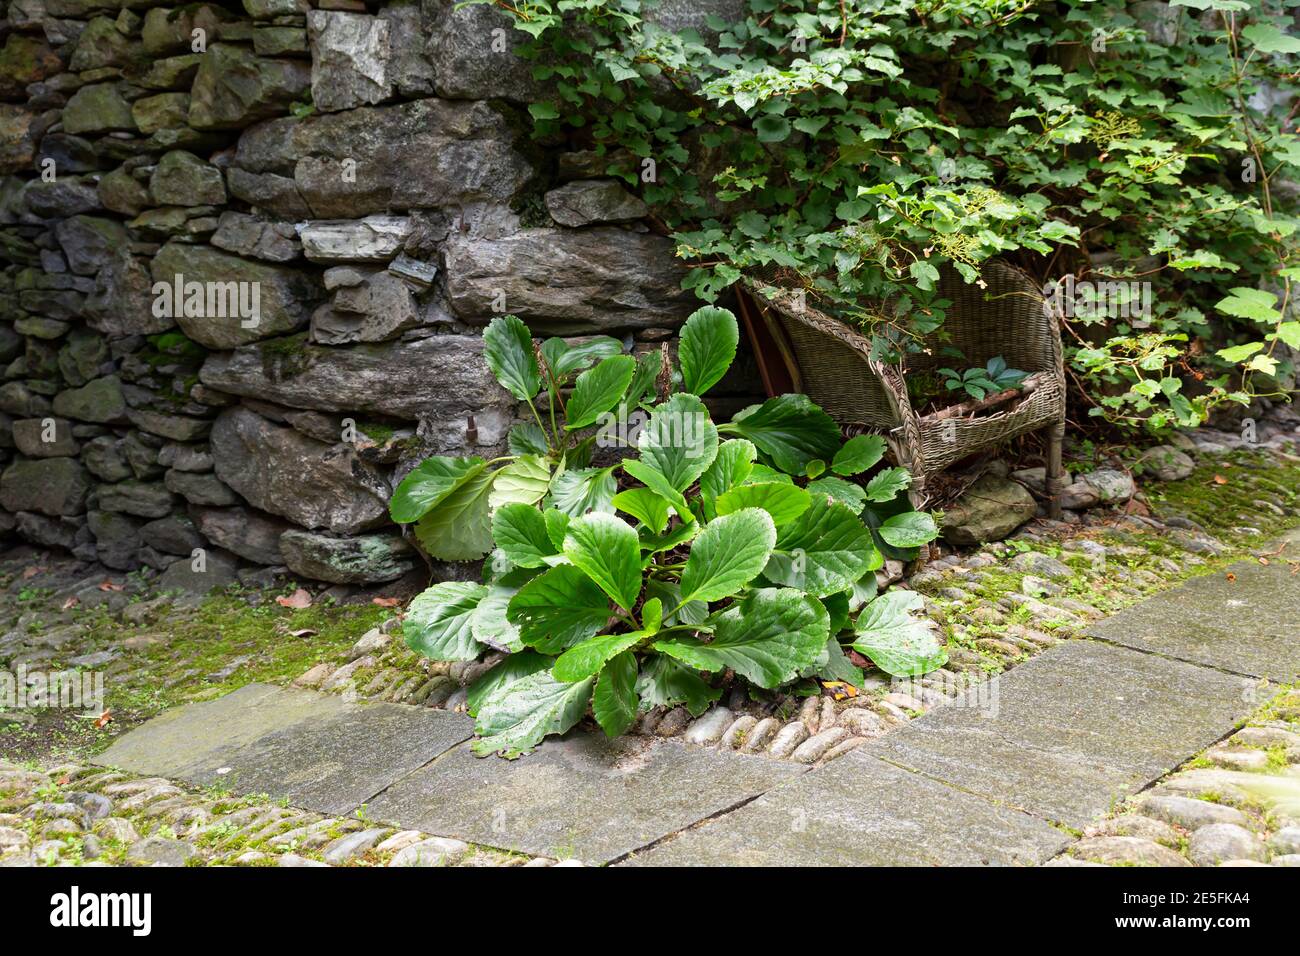 Idílica escena de jardín con una pared de piedra y una silla decadente Foto de stock